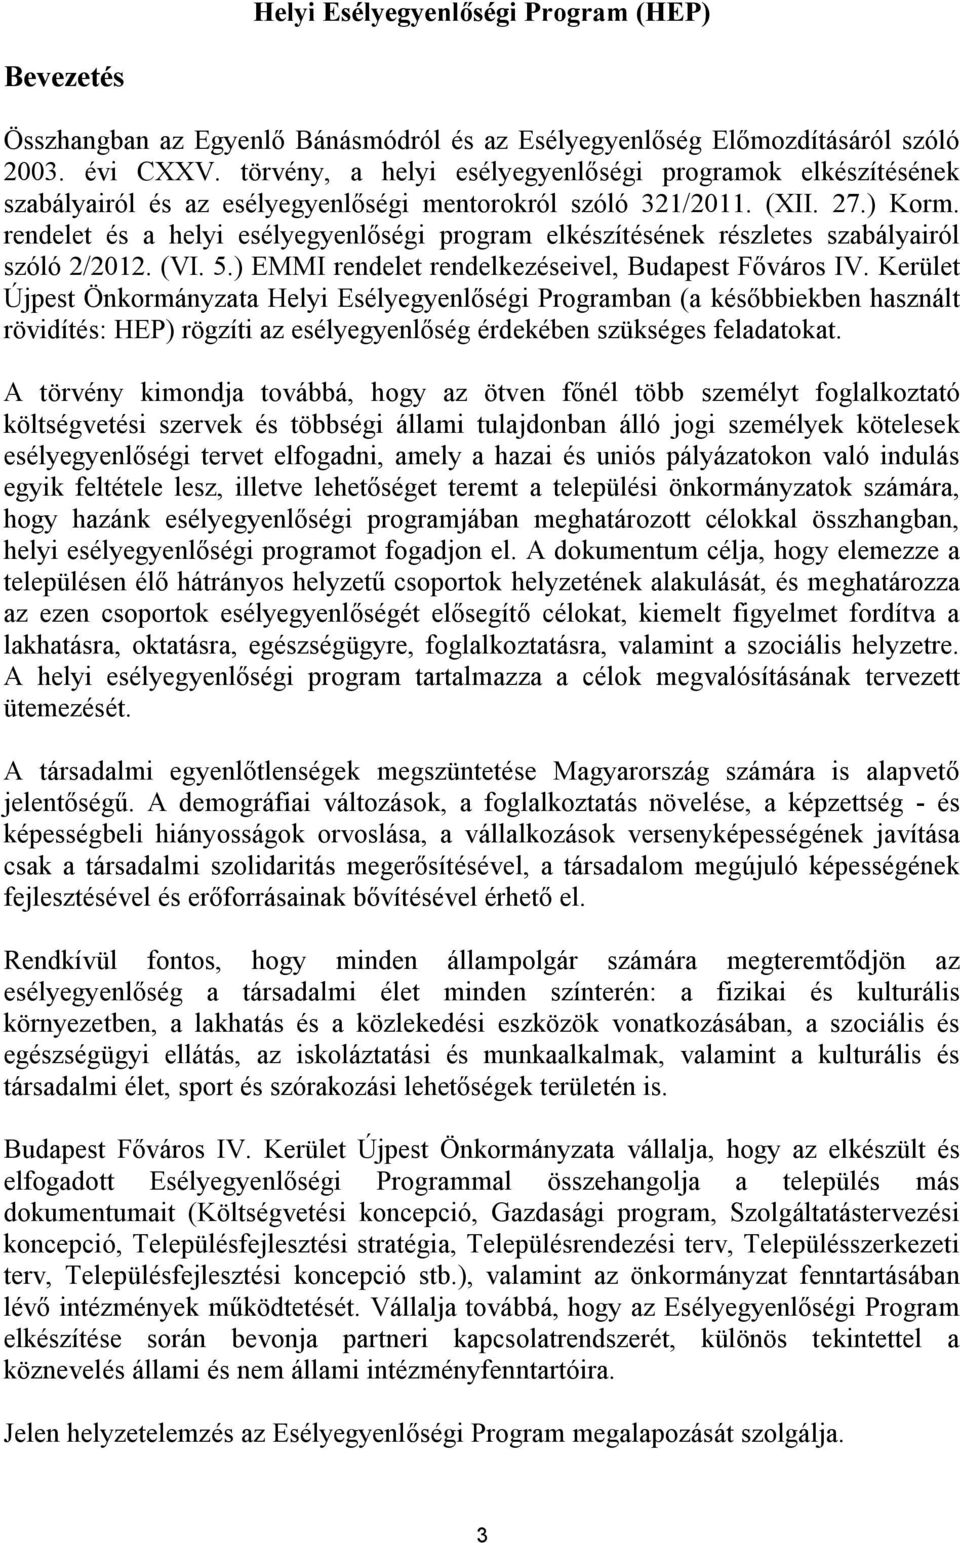 rendelet és a helyi esélyegyenlőségi program elkészítésének részletes szabályairól szóló 2/2012. (VI. 5.) EMMI rendelet rendelkezéseivel, Budapest Főváros IV.